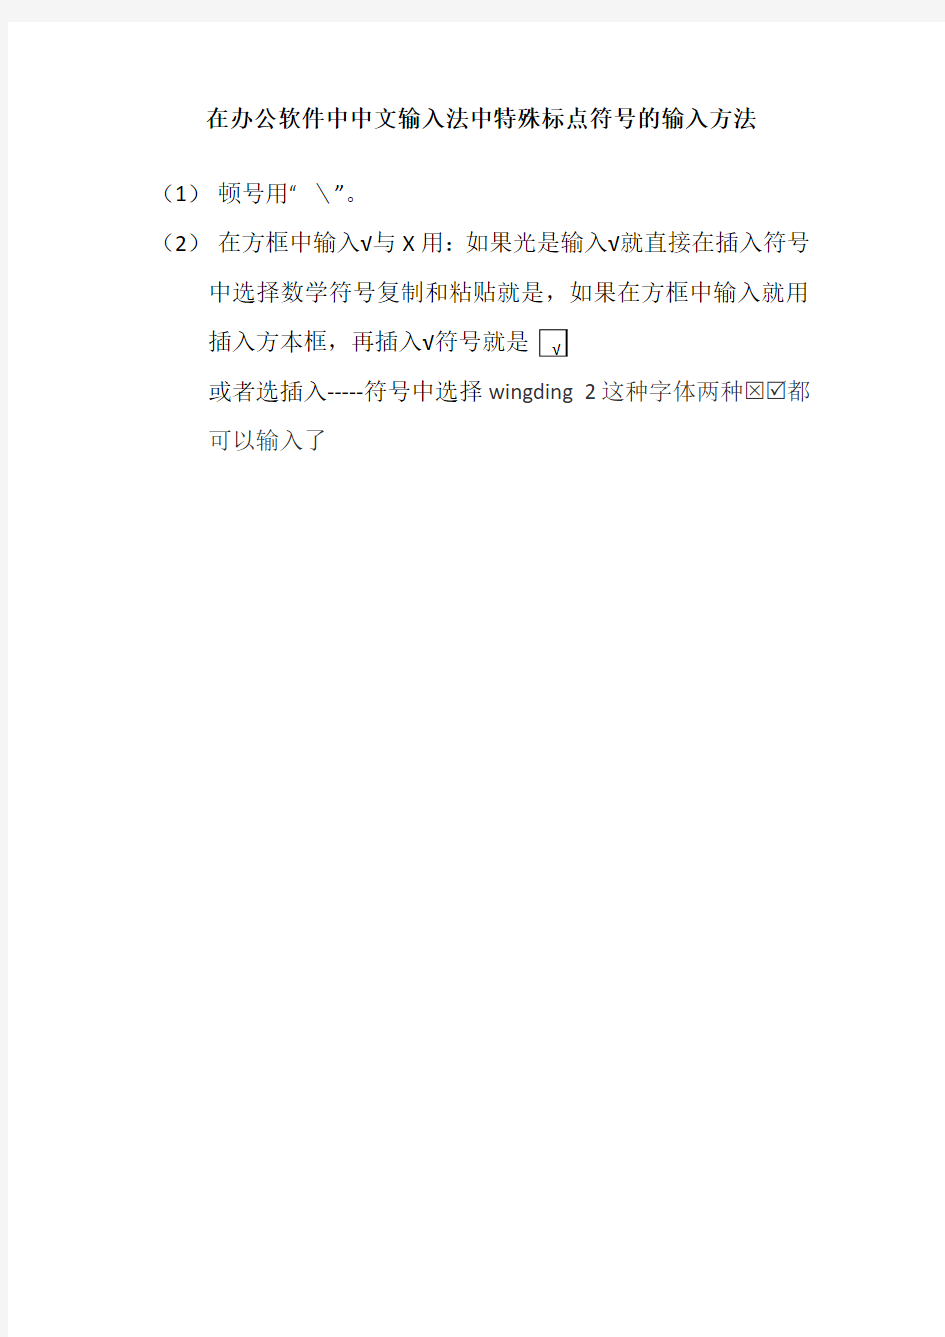 在办公软件中中文输入法中特殊标点符号的输入方法